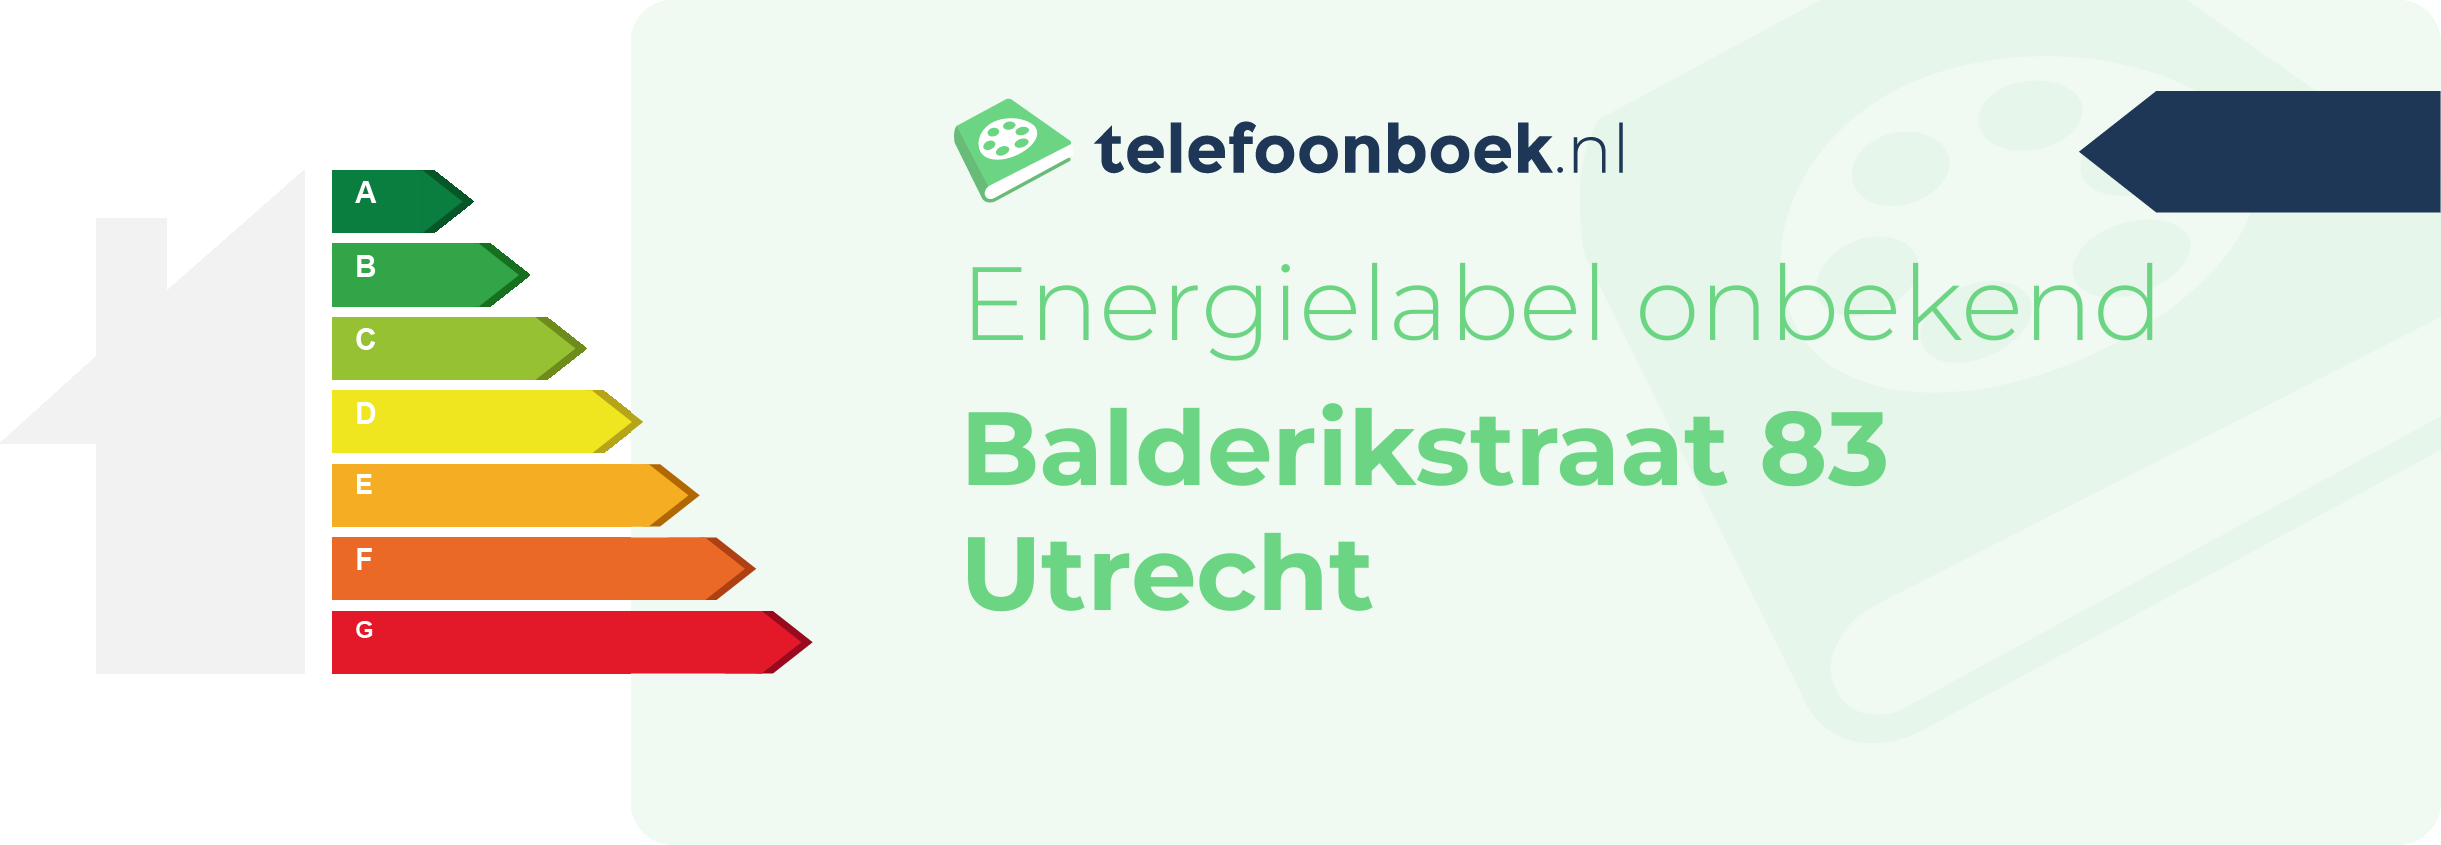 Energielabel Balderikstraat 83 Utrecht